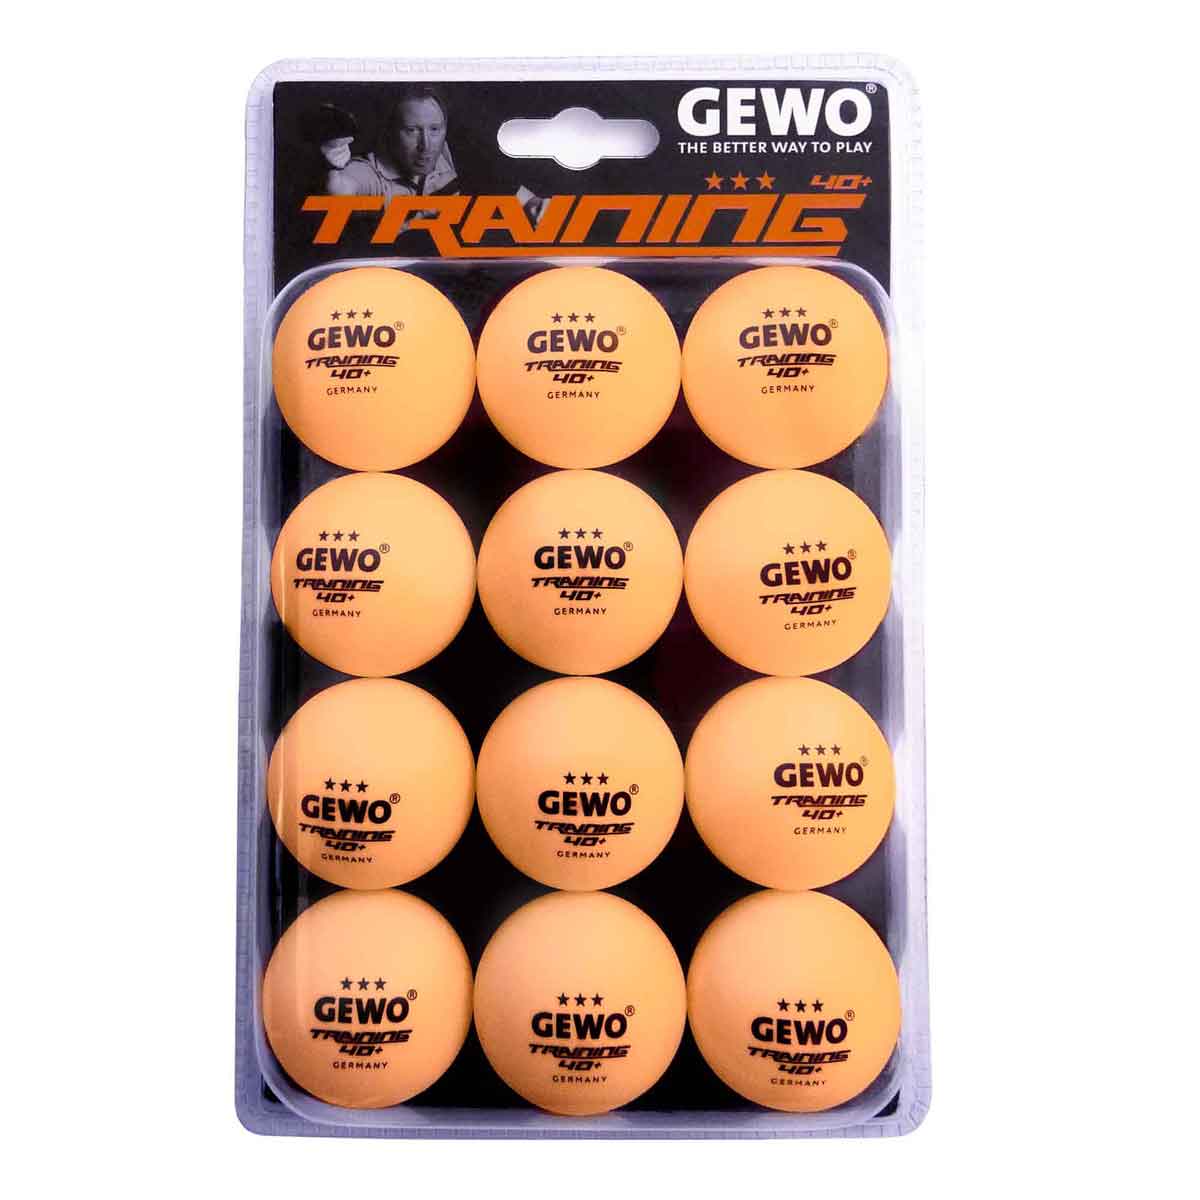 GEWO Trainingsball *** 40+ 12er orange